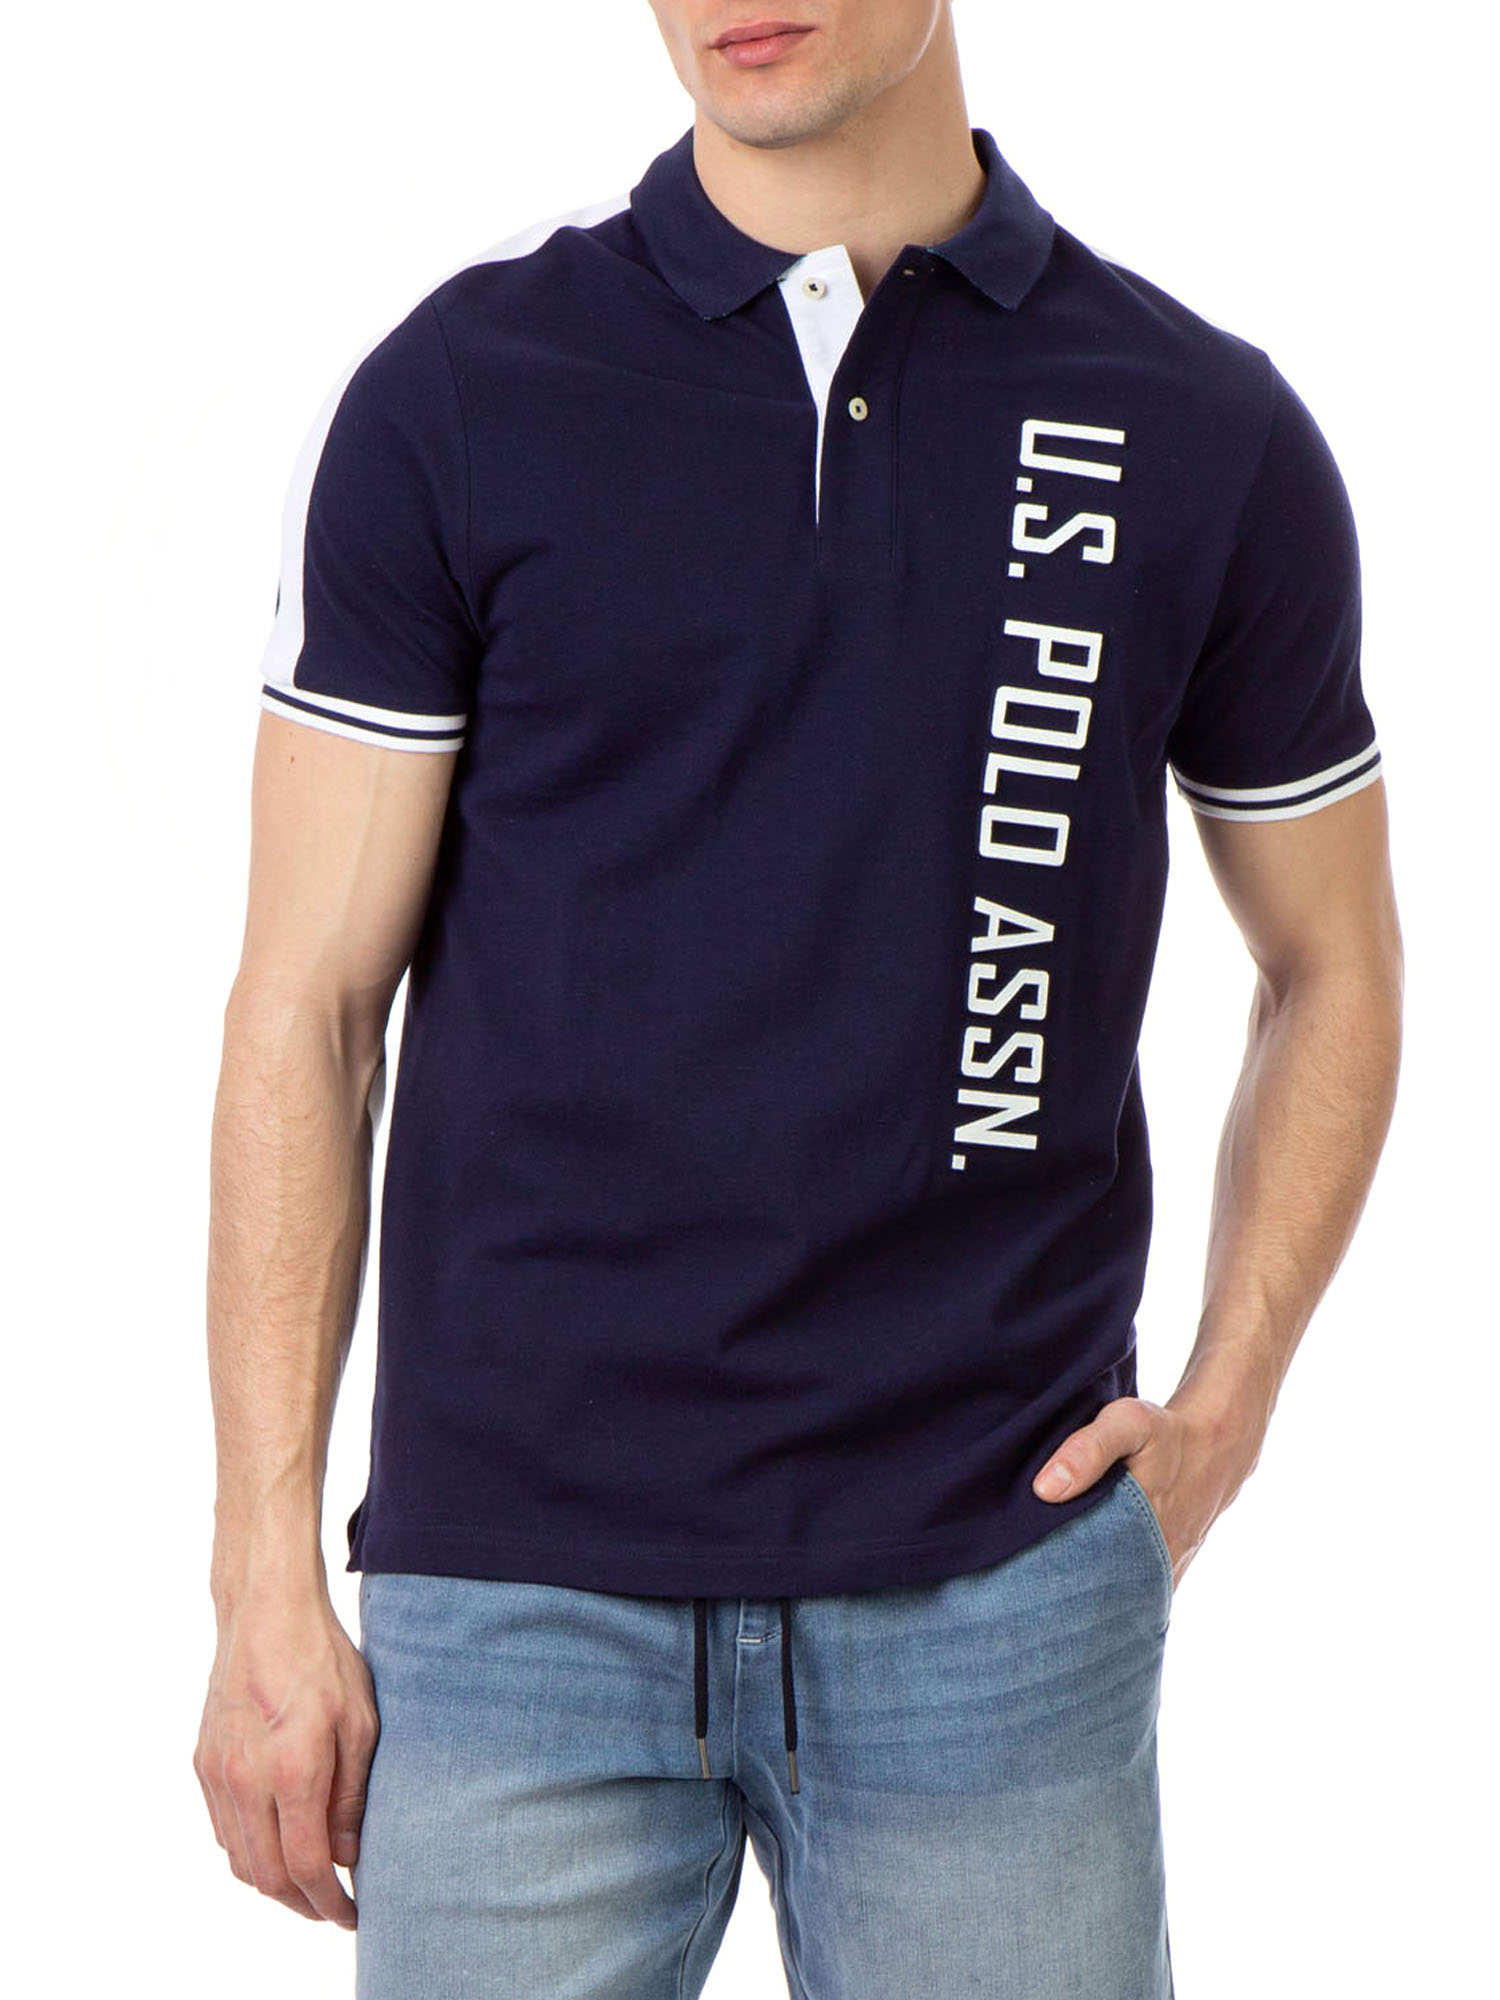 U.S. Polo Assn. Men's Embossed Logo Pique Polo Shirt - image 1 of 6